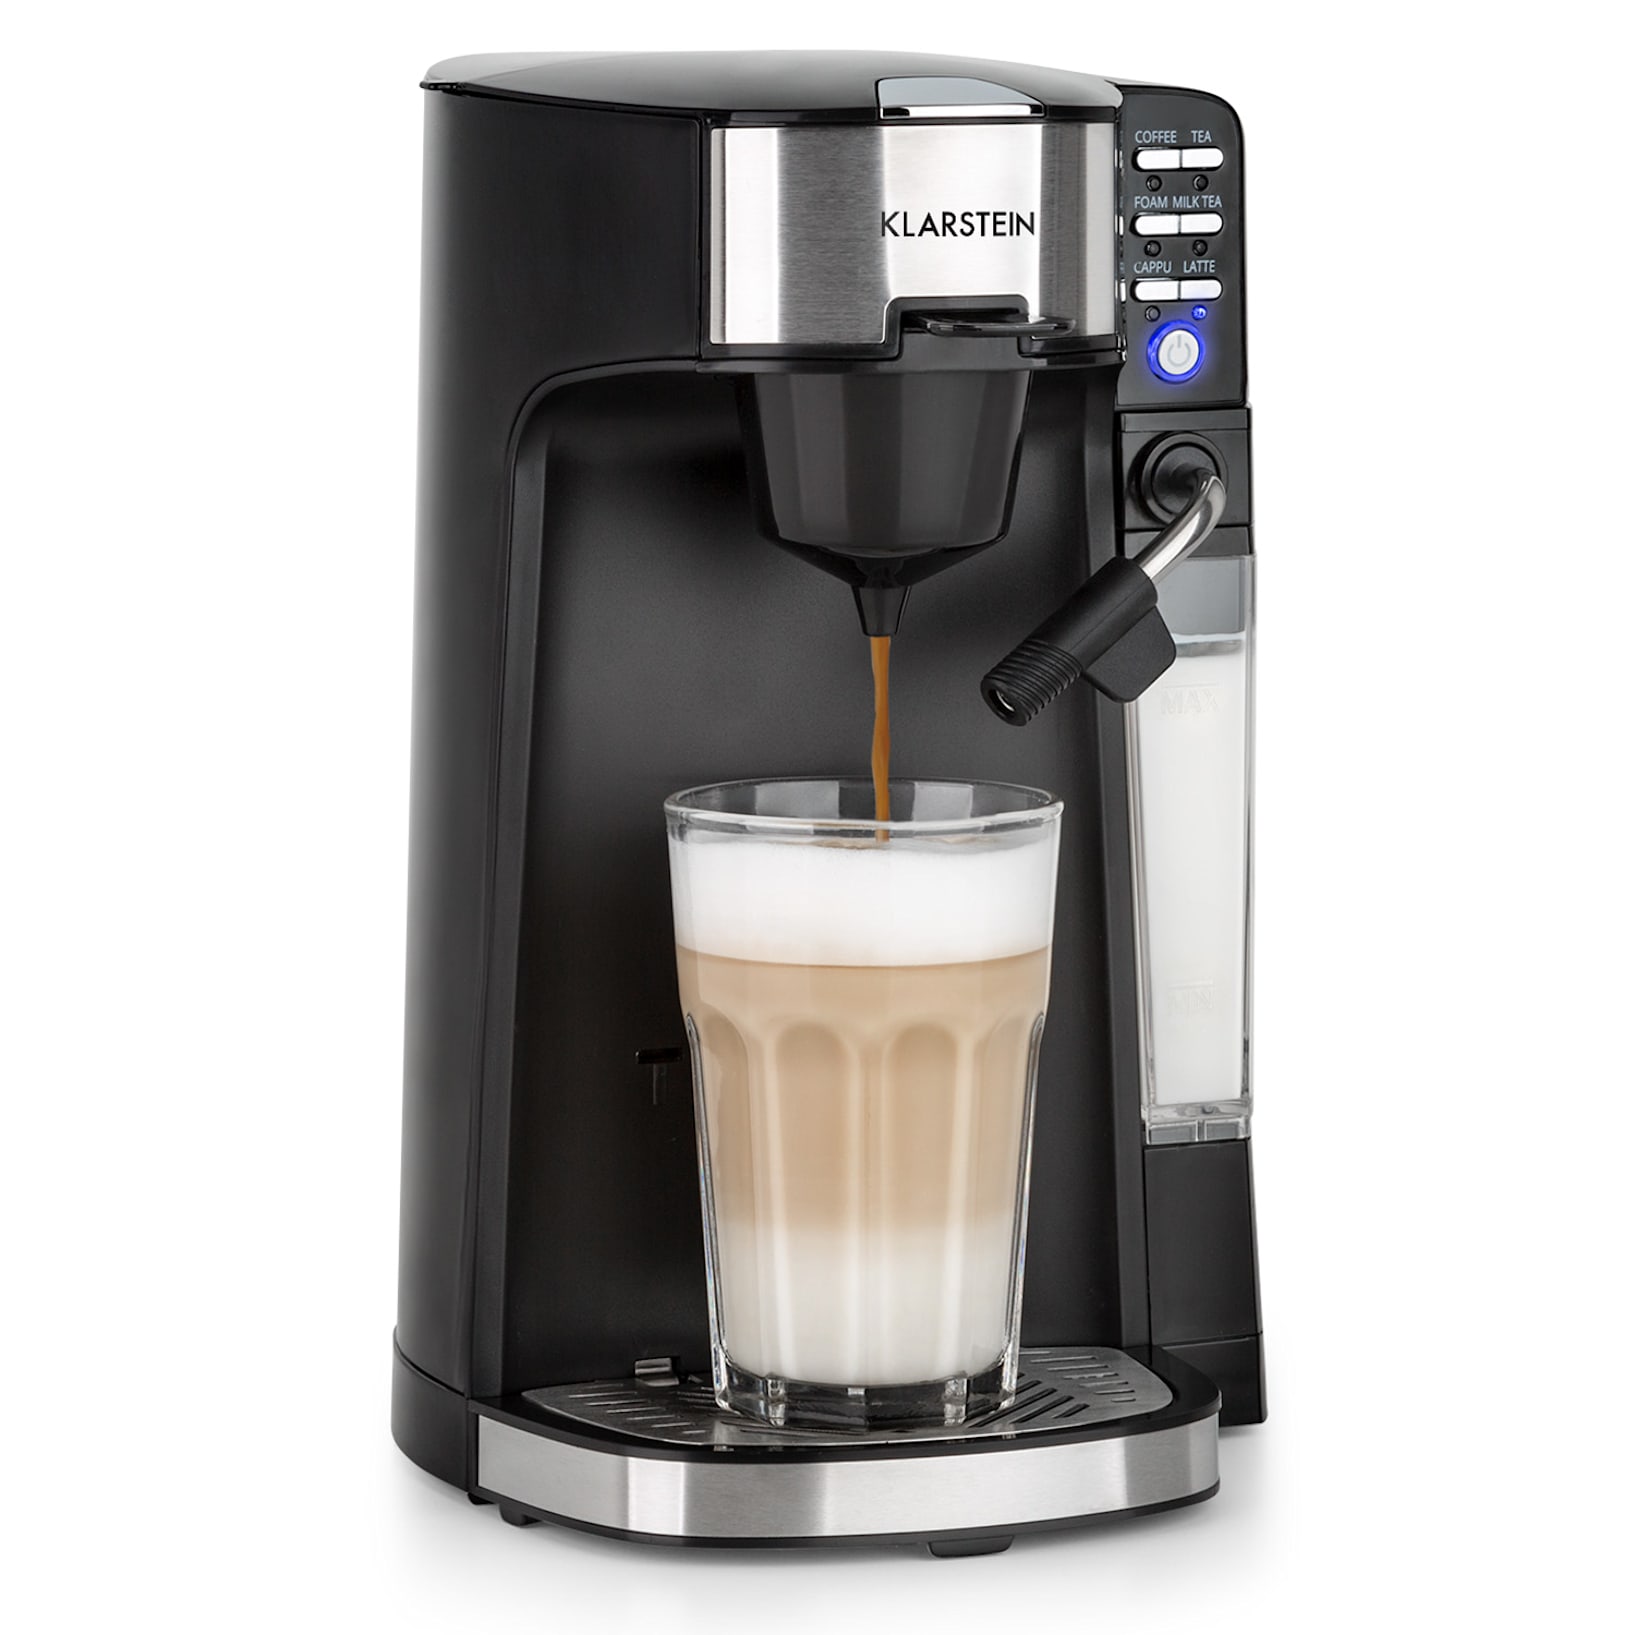 Klarstein Baristomat 2-in-1 Fully Automatic Coffee & Tea Maker